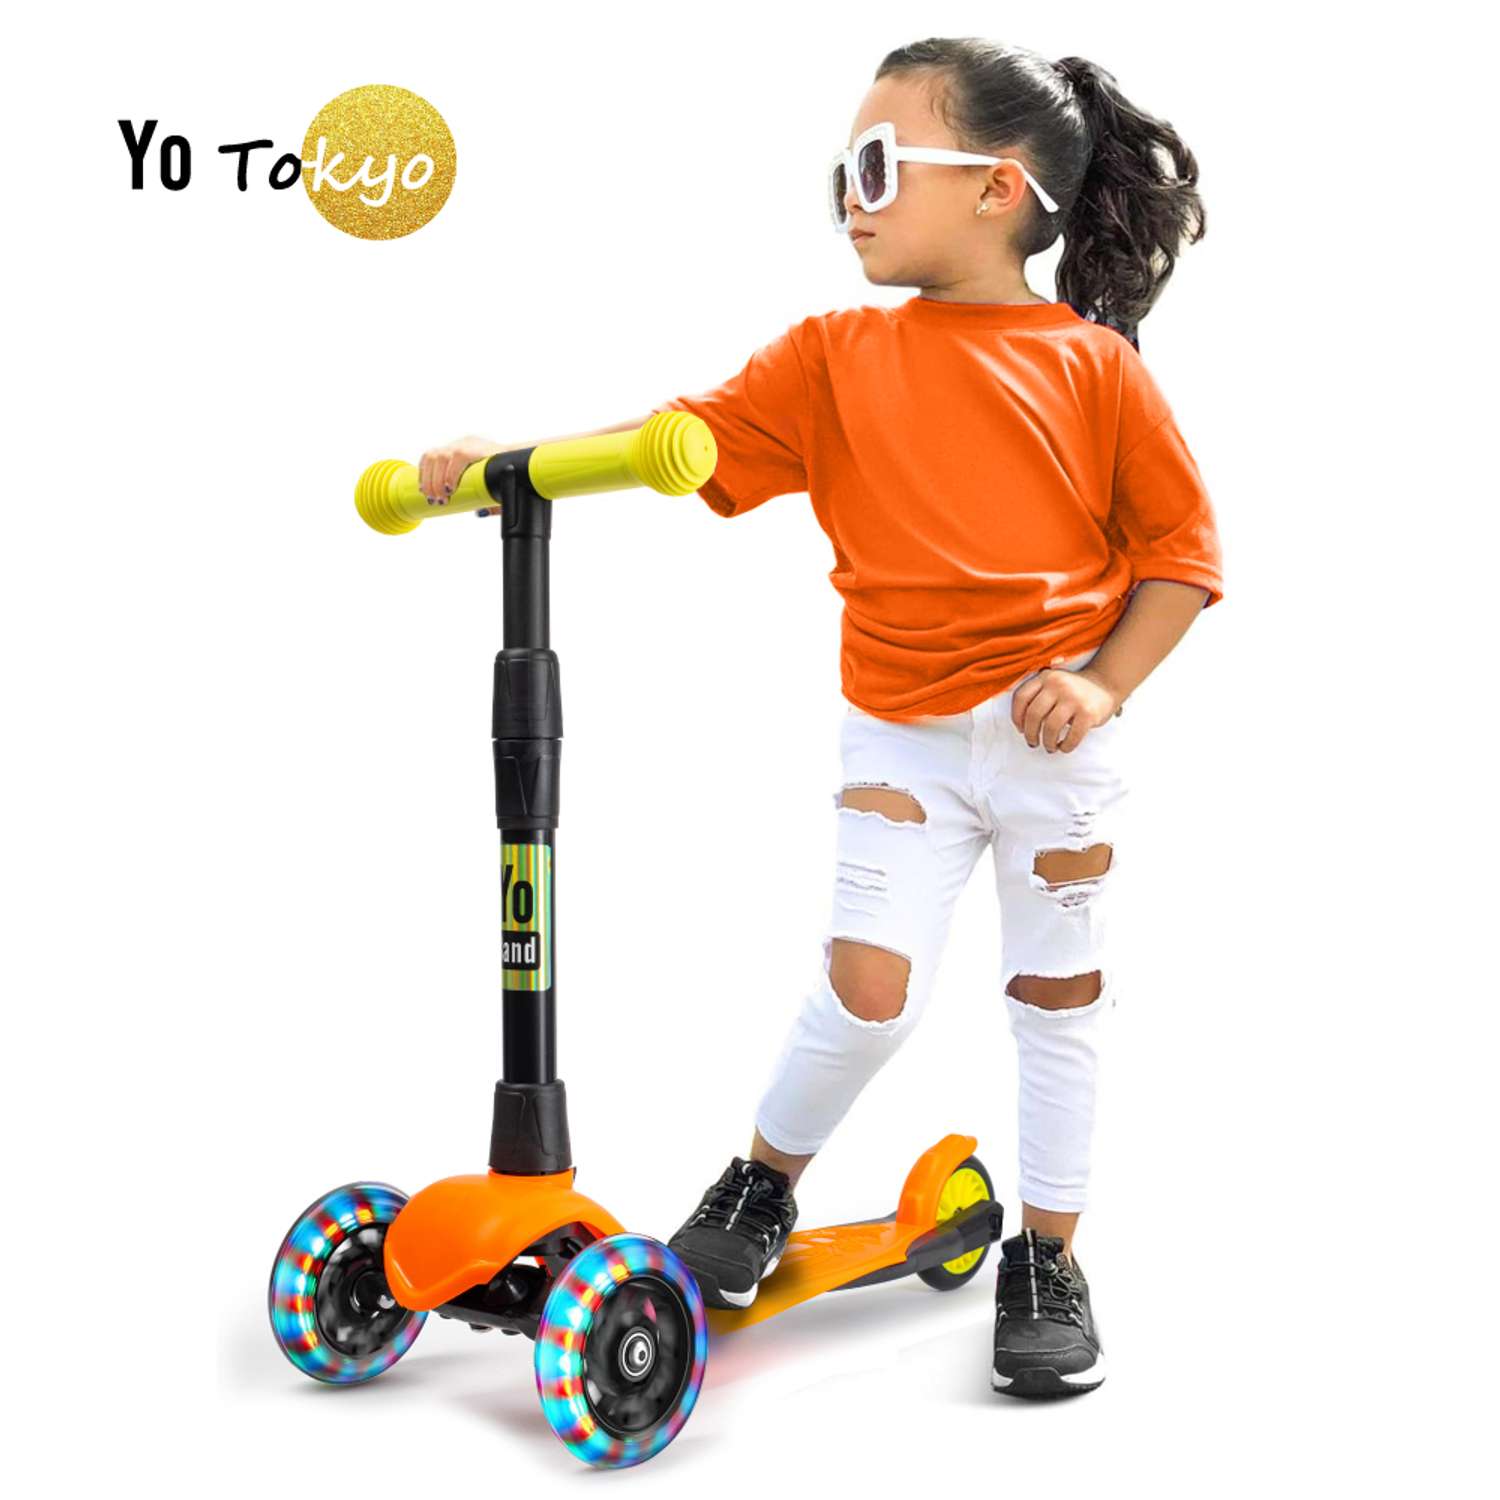 Самокат детский Yo Band Tokyo легкий бесшумный светящиеся колёса оранжевый-желтый - фото 1